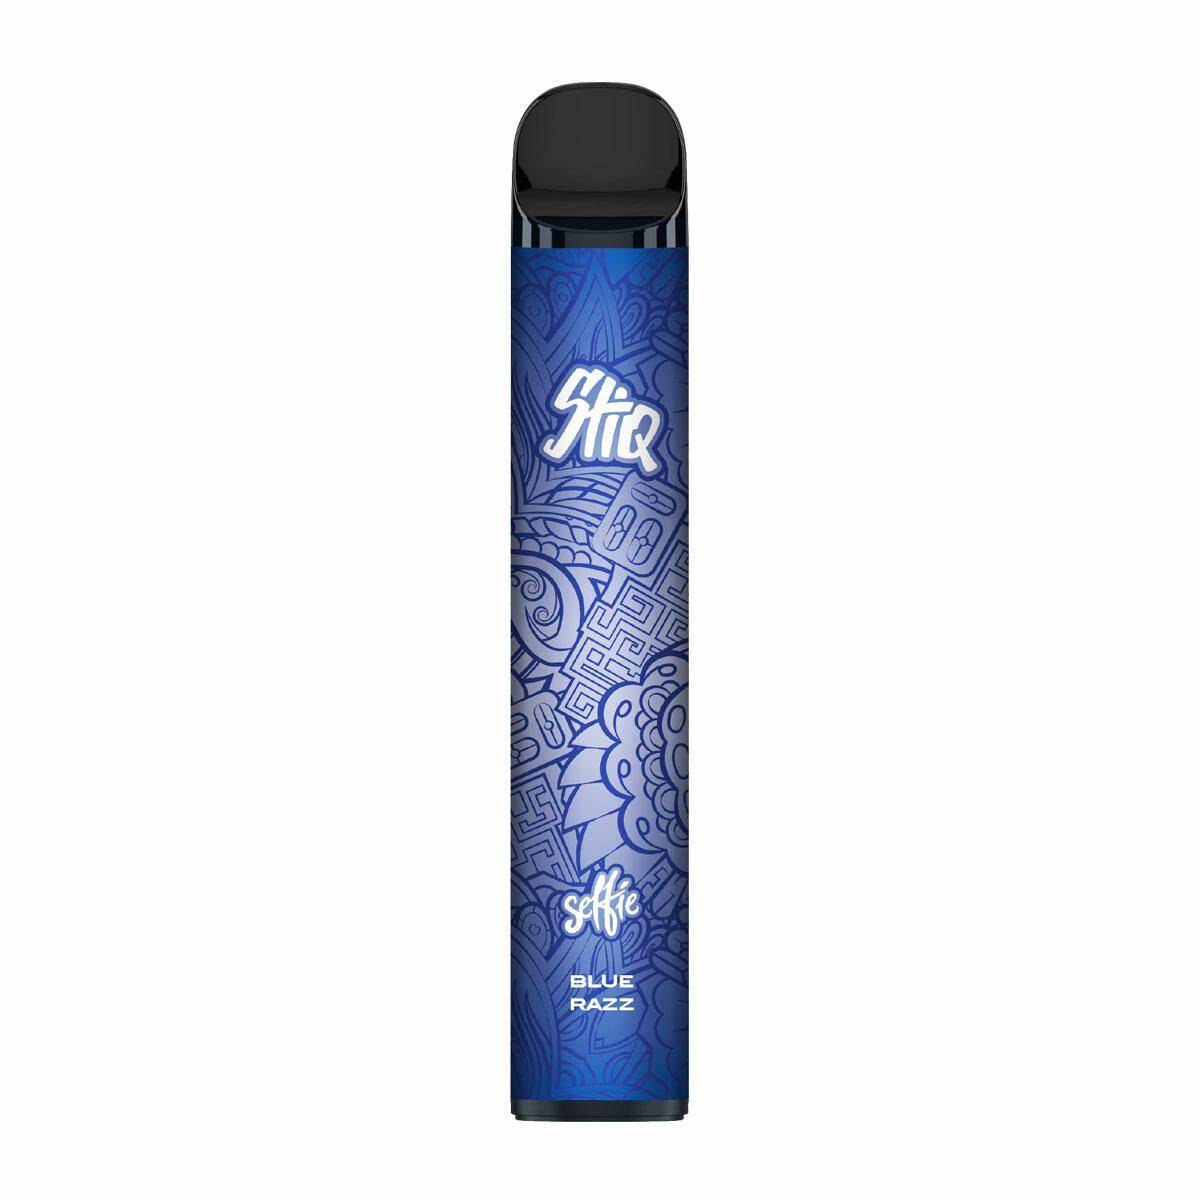 E-Inhaler Selfie Stiq 2500 - Blue Razz 0mg